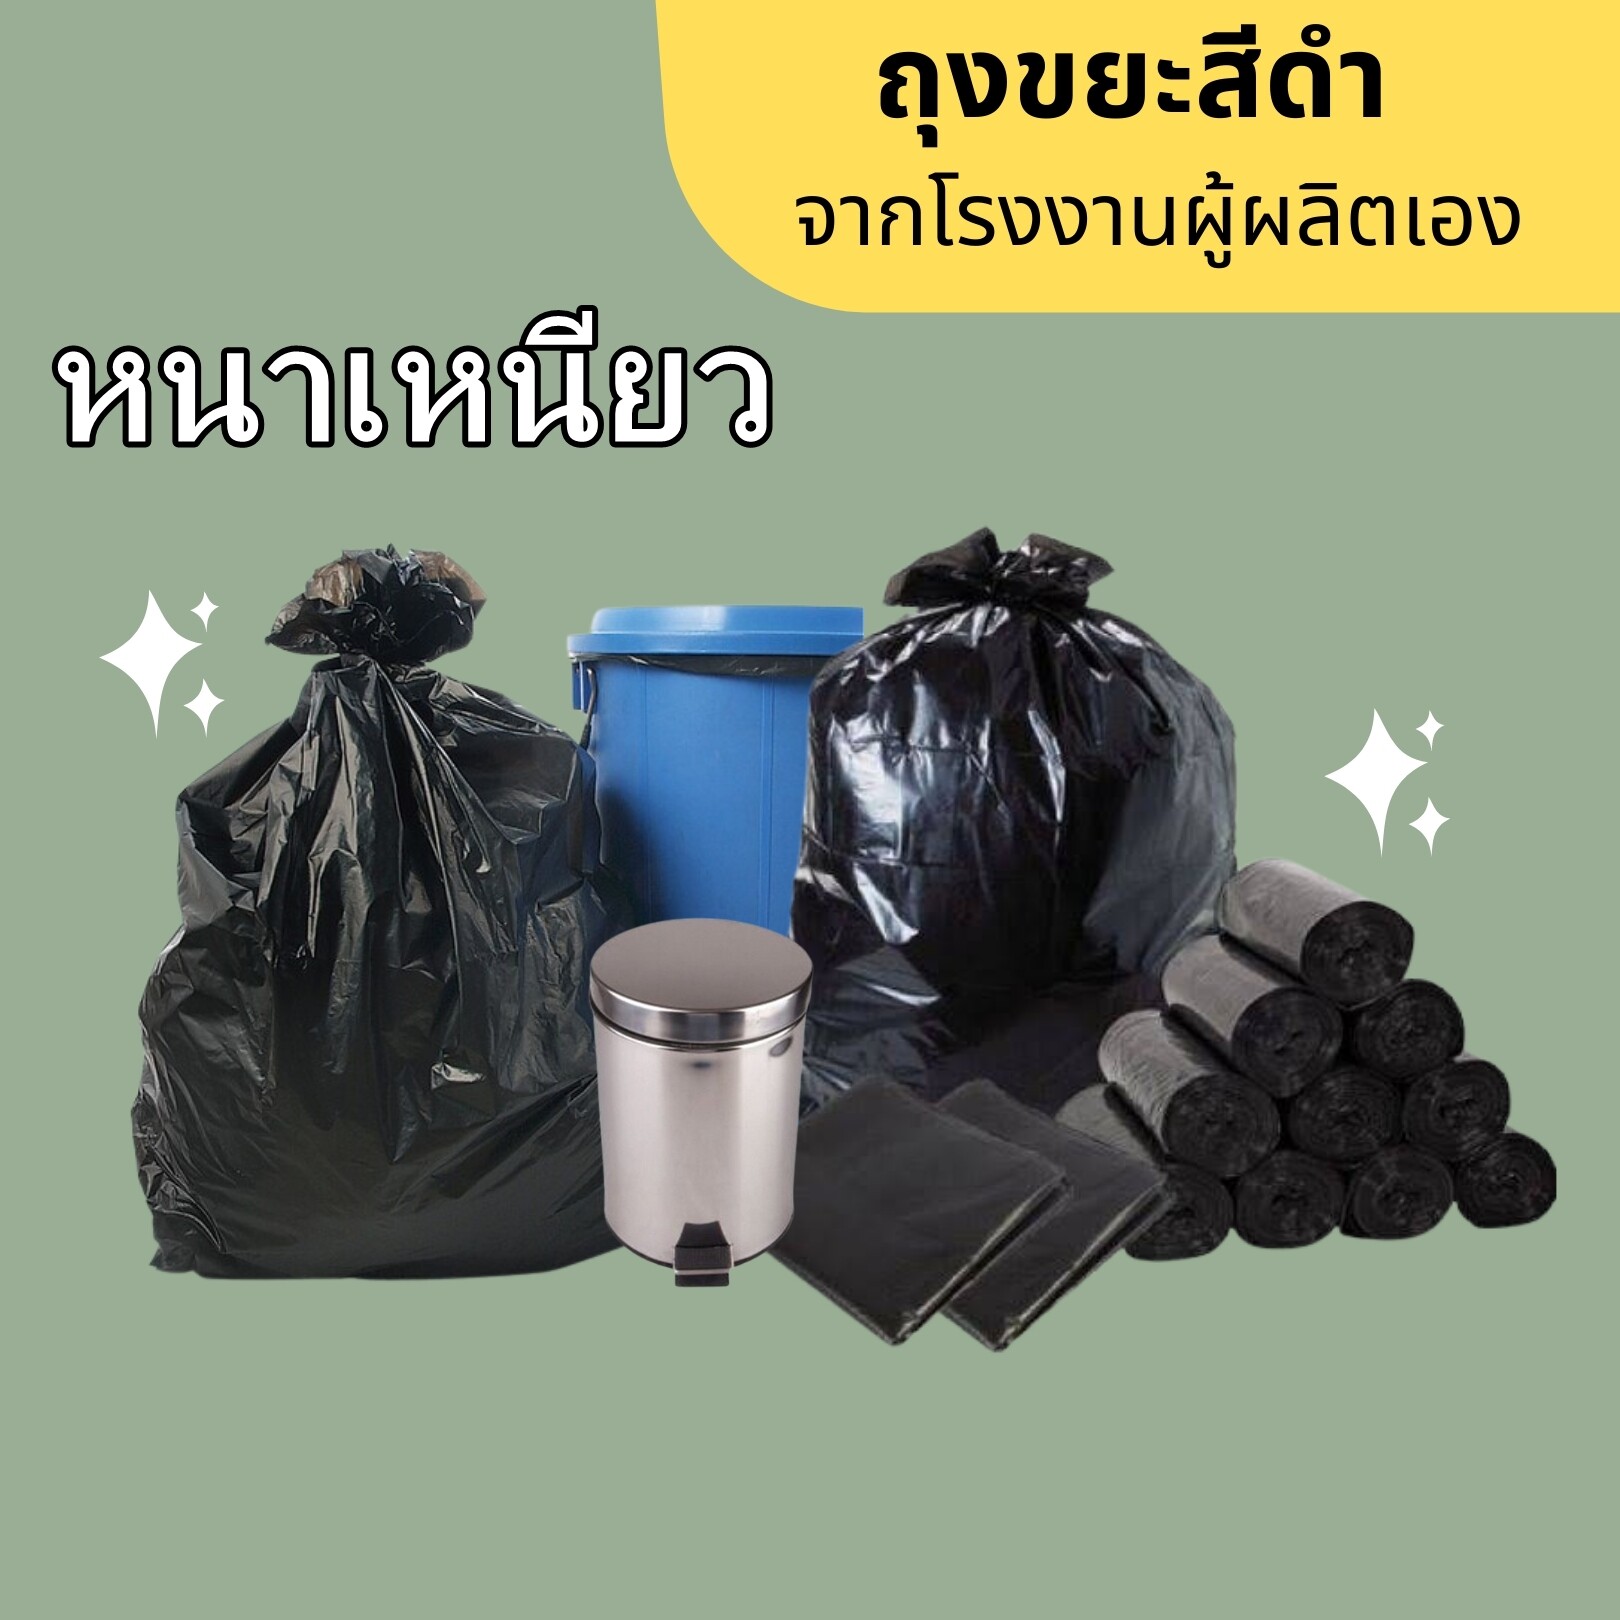 ถุงขยะ ถุงขยะดำ ถุงขยะไซส์ใหญ่ ถุงดำราคาประหยัด ถุงขยะไม่มีกลิ่น ถุงดำราคาโรงงาน ถุงขยะจากโรงงานผู้ผลิต